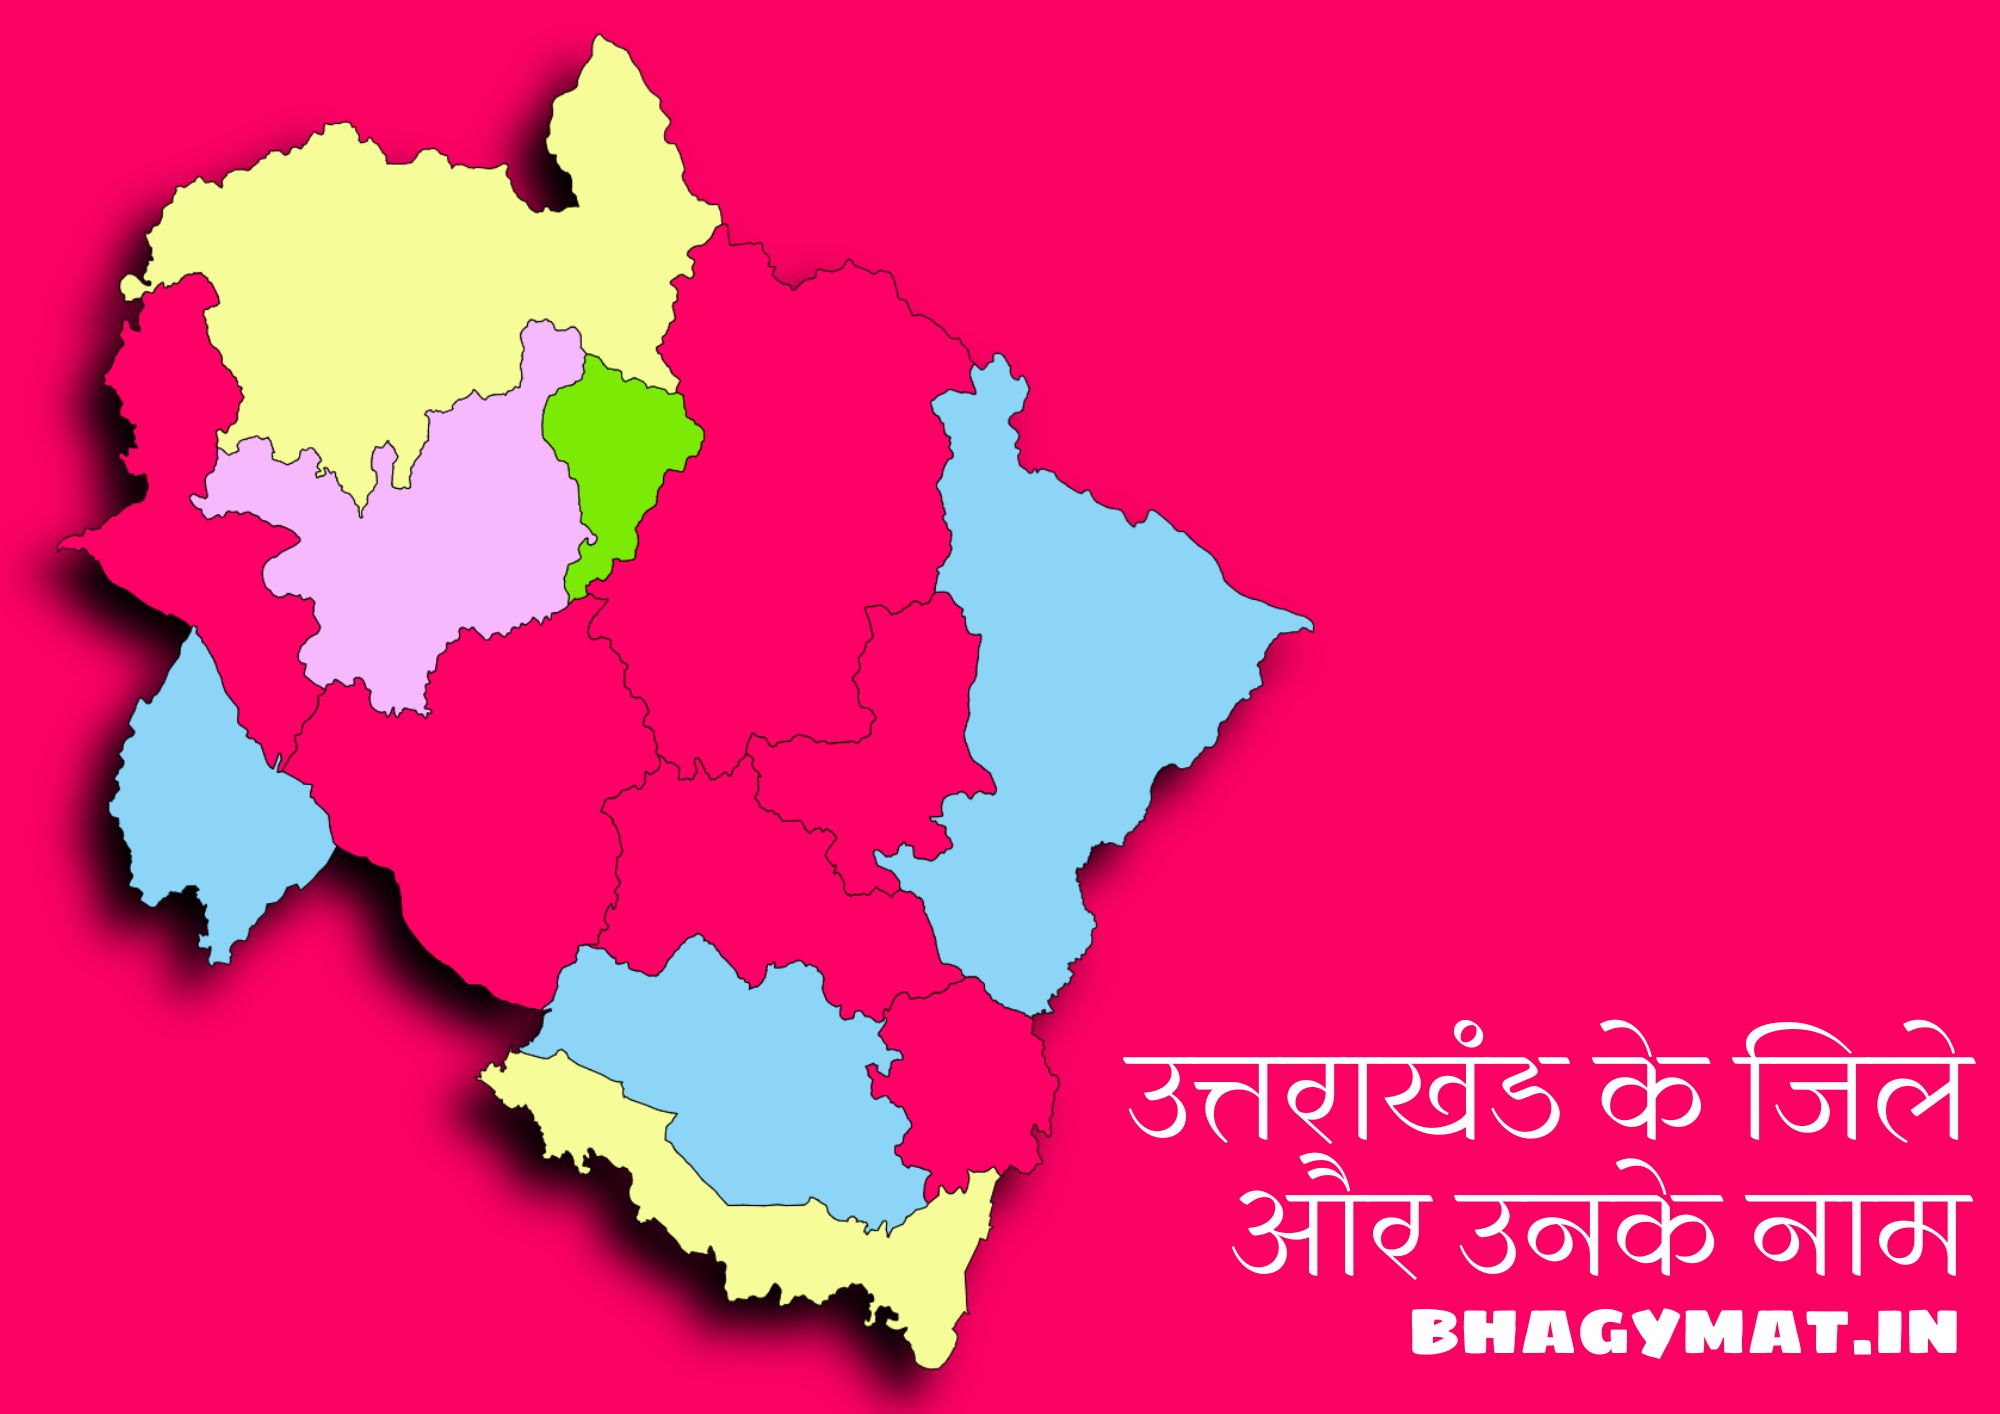 [2023] वर्तमान में उत्तराखंड में कुल कितने जिले हैं? (Uttarakhand Mein Kul Kitne Jile Hai) - Uttarakhand Me Kitne Jile Hai